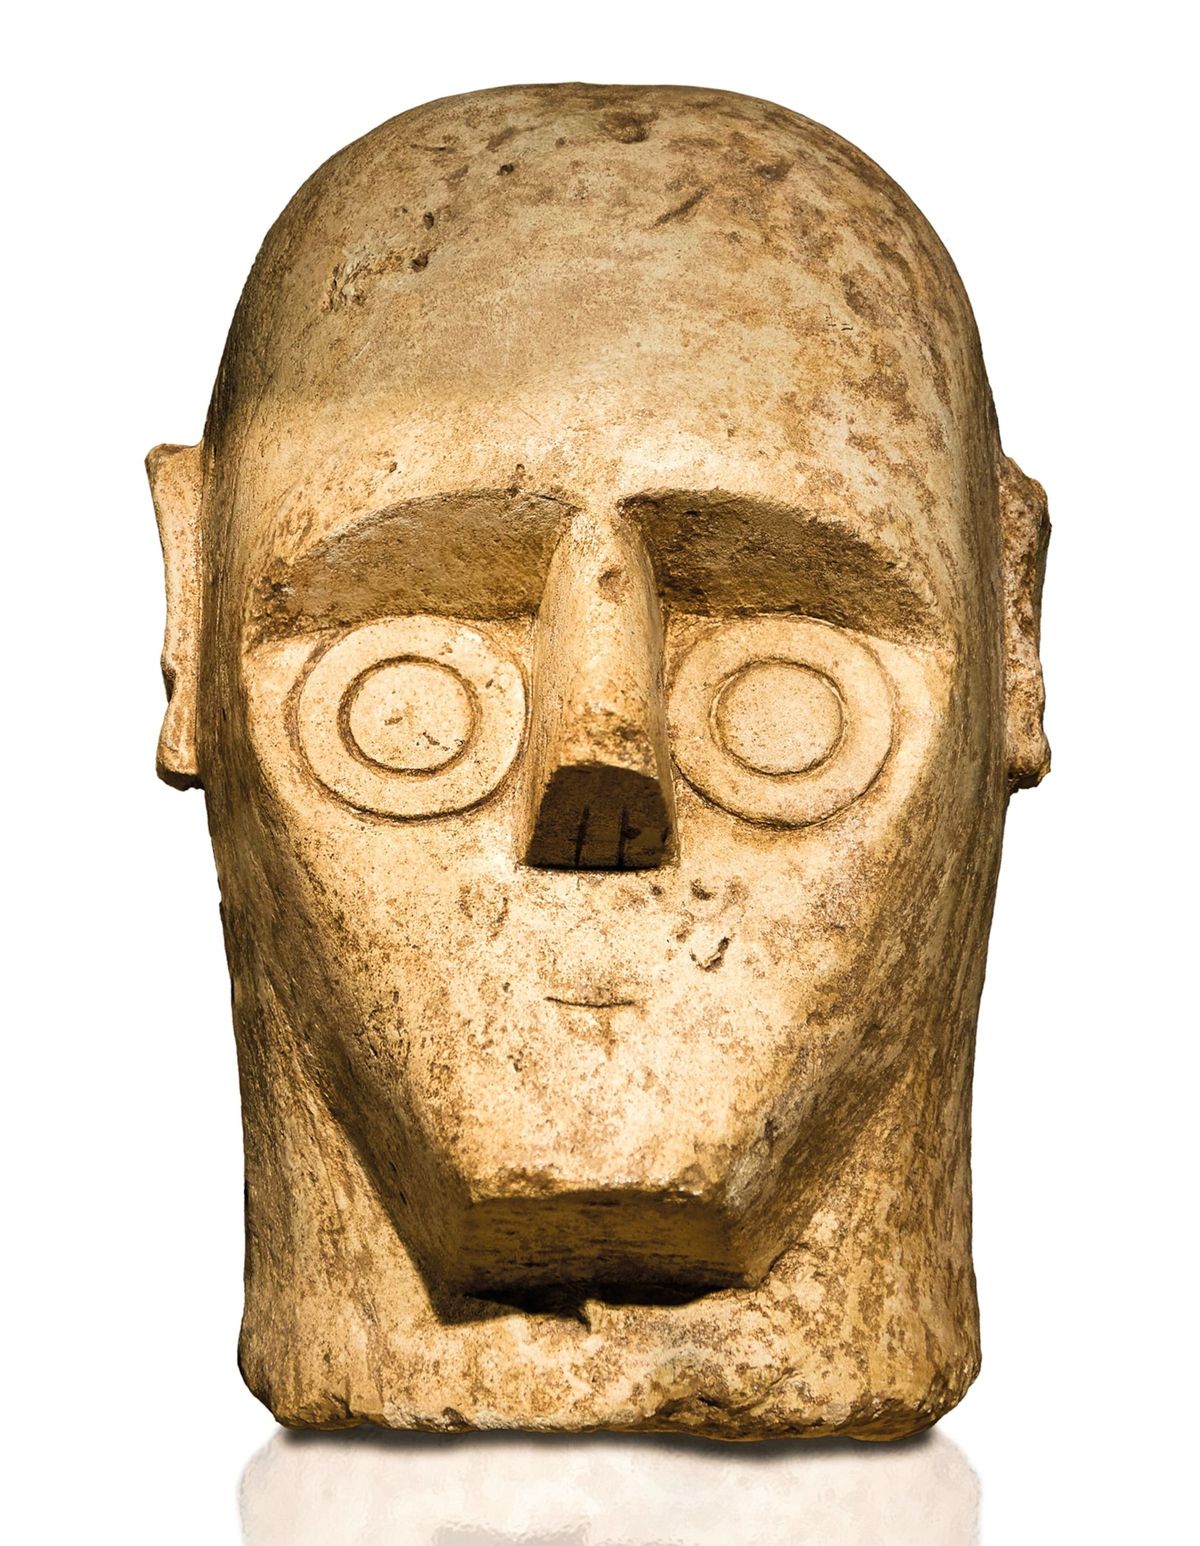 Perfecte concentrische cirkels en een Tvormige neus en wenkbrauwen vormen het karakteristieke gezicht van een van de zogenaamde reuzen van Sardini in het Nationaal Archeologisch Museum van Cagliari